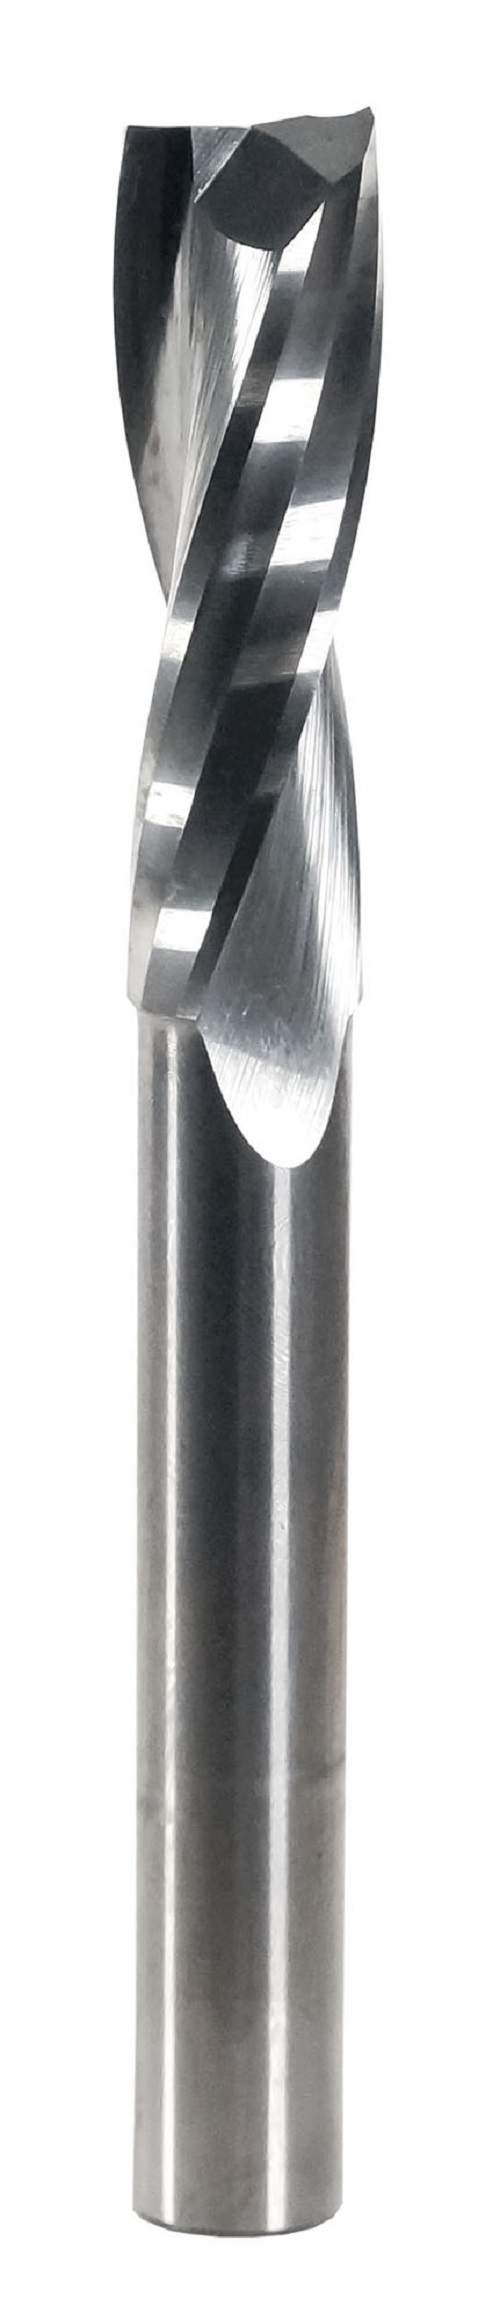 Фреза спиральная твердосплавная Энкор Z2 верхний рез ф10х32 мм хв.8 46653 фреза wpw pfm8192 копир сменные ножи верхний подшипник d19 b50 z2 хвостовик 12s pfm8192